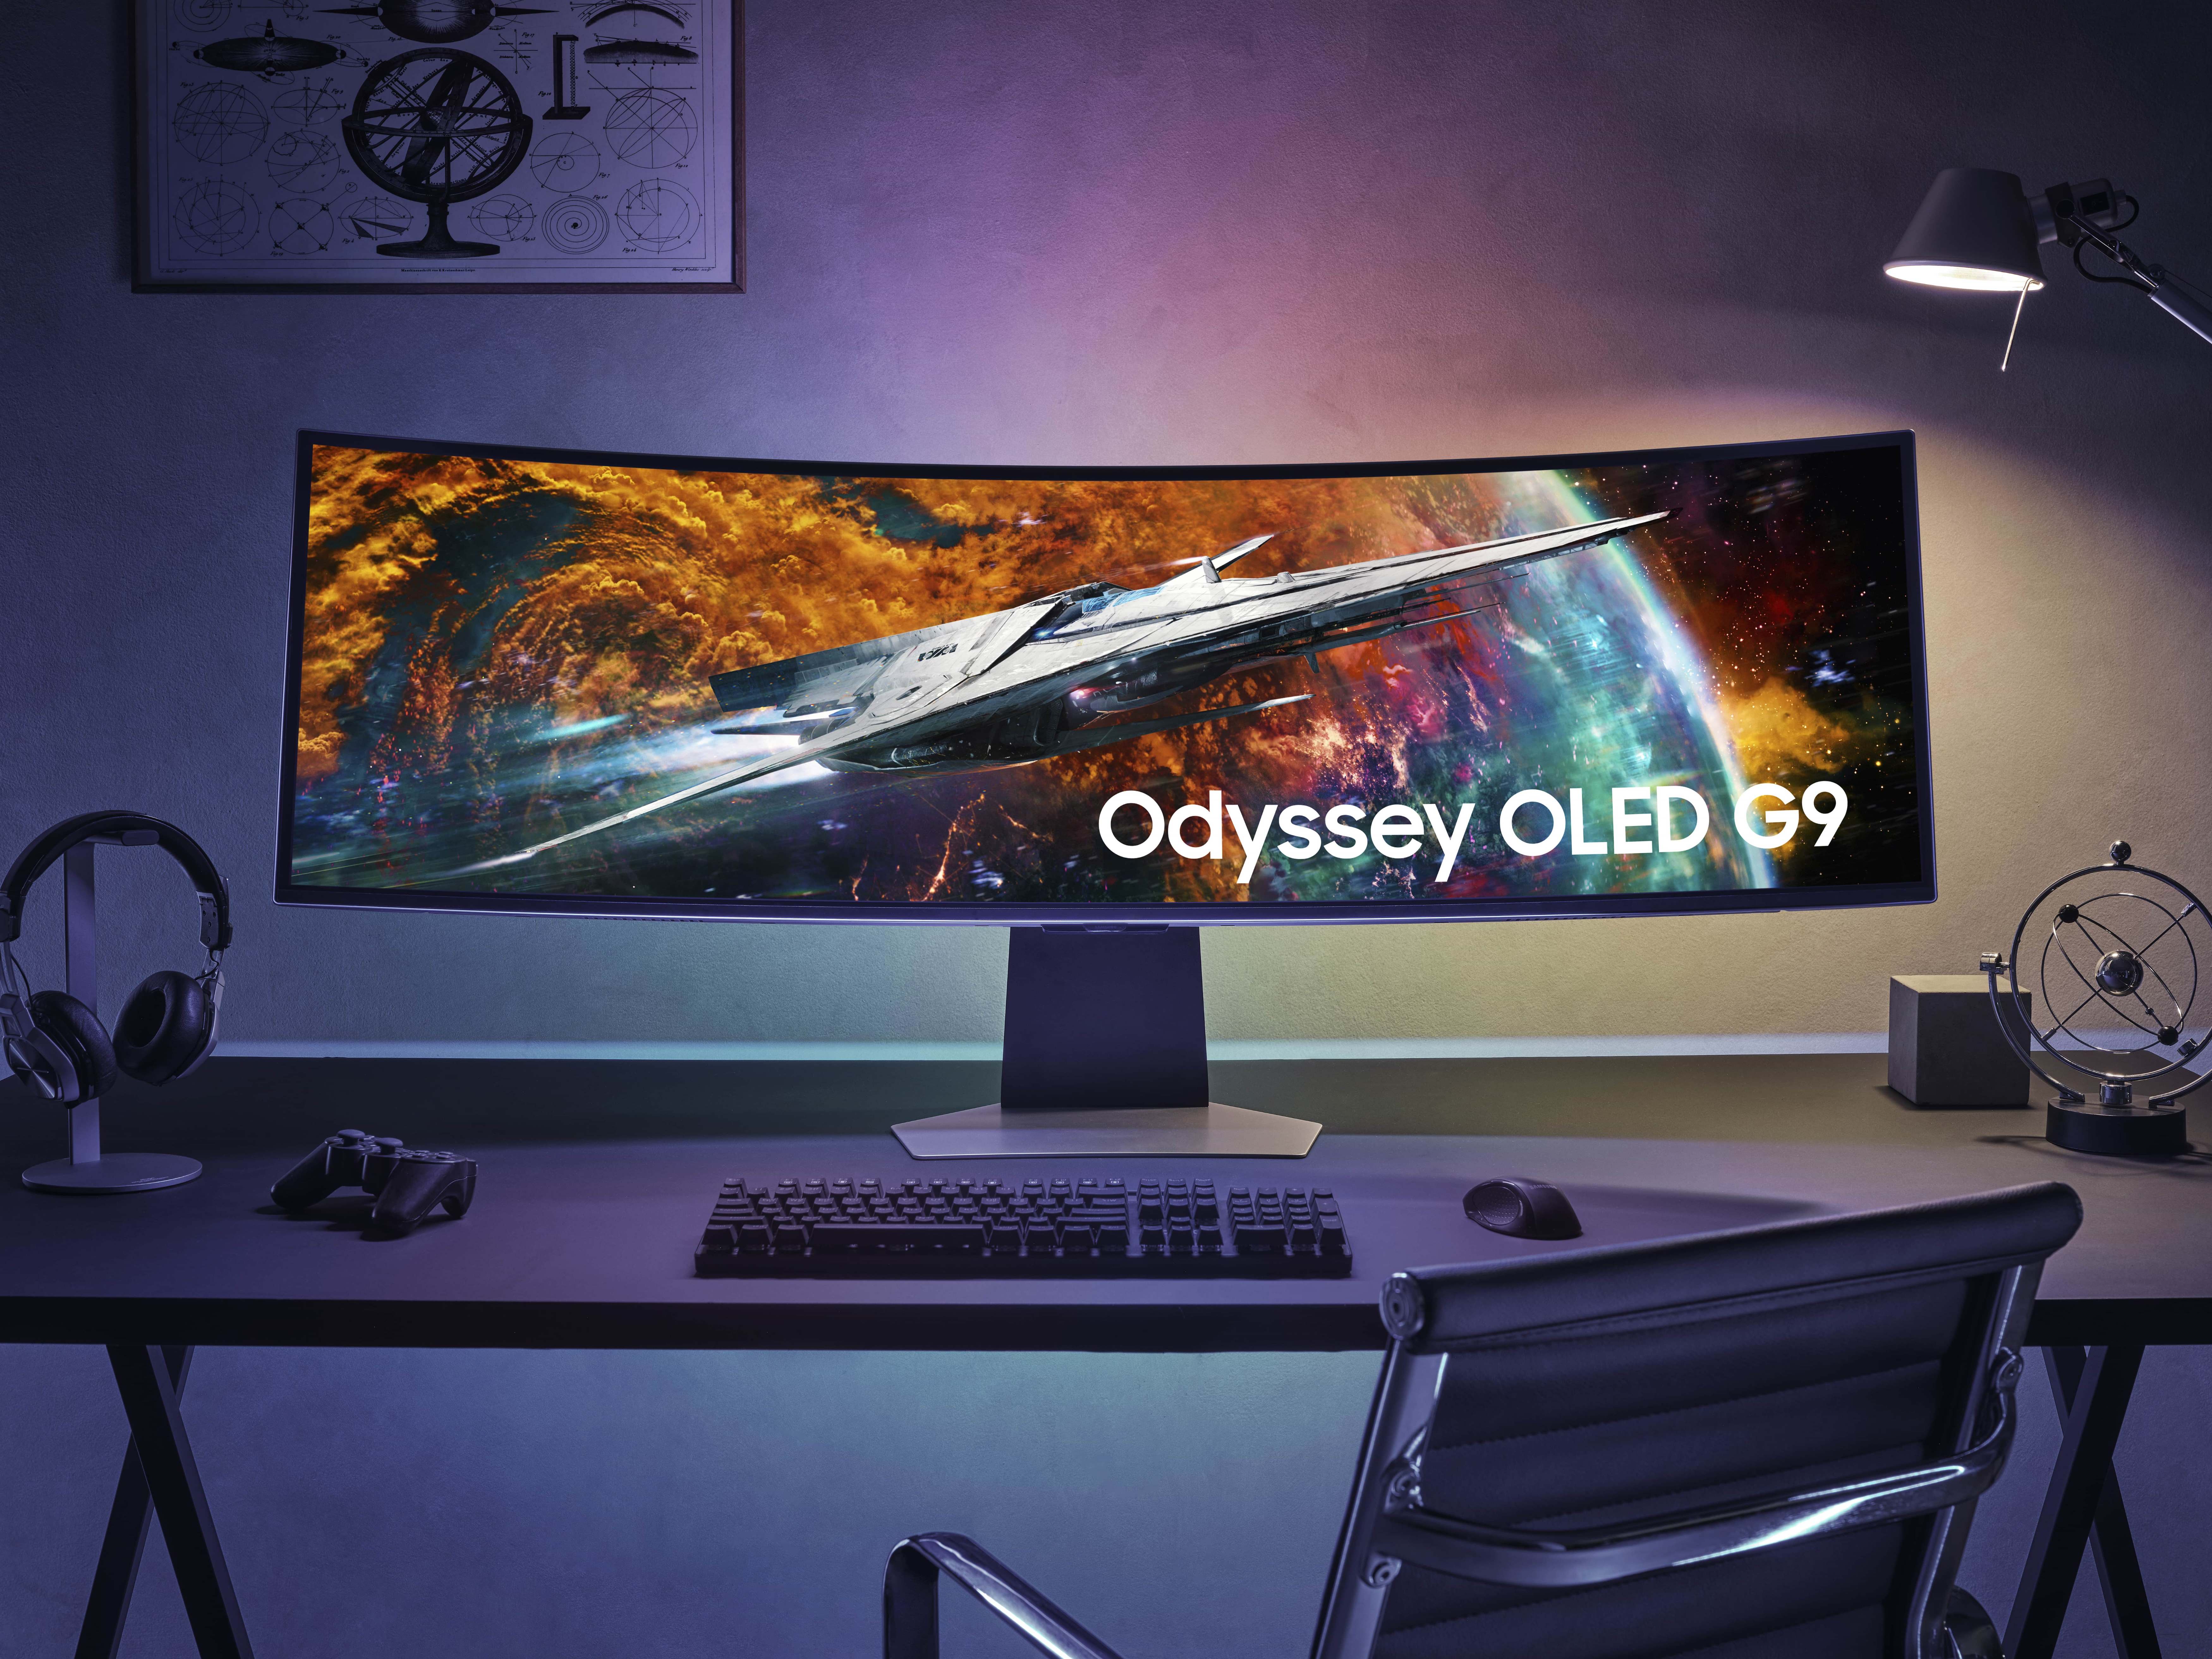 Samsung déploie une nouvelle ère pour les jeux OLED avec le lancement mondial de l’Odyssey OLED G9